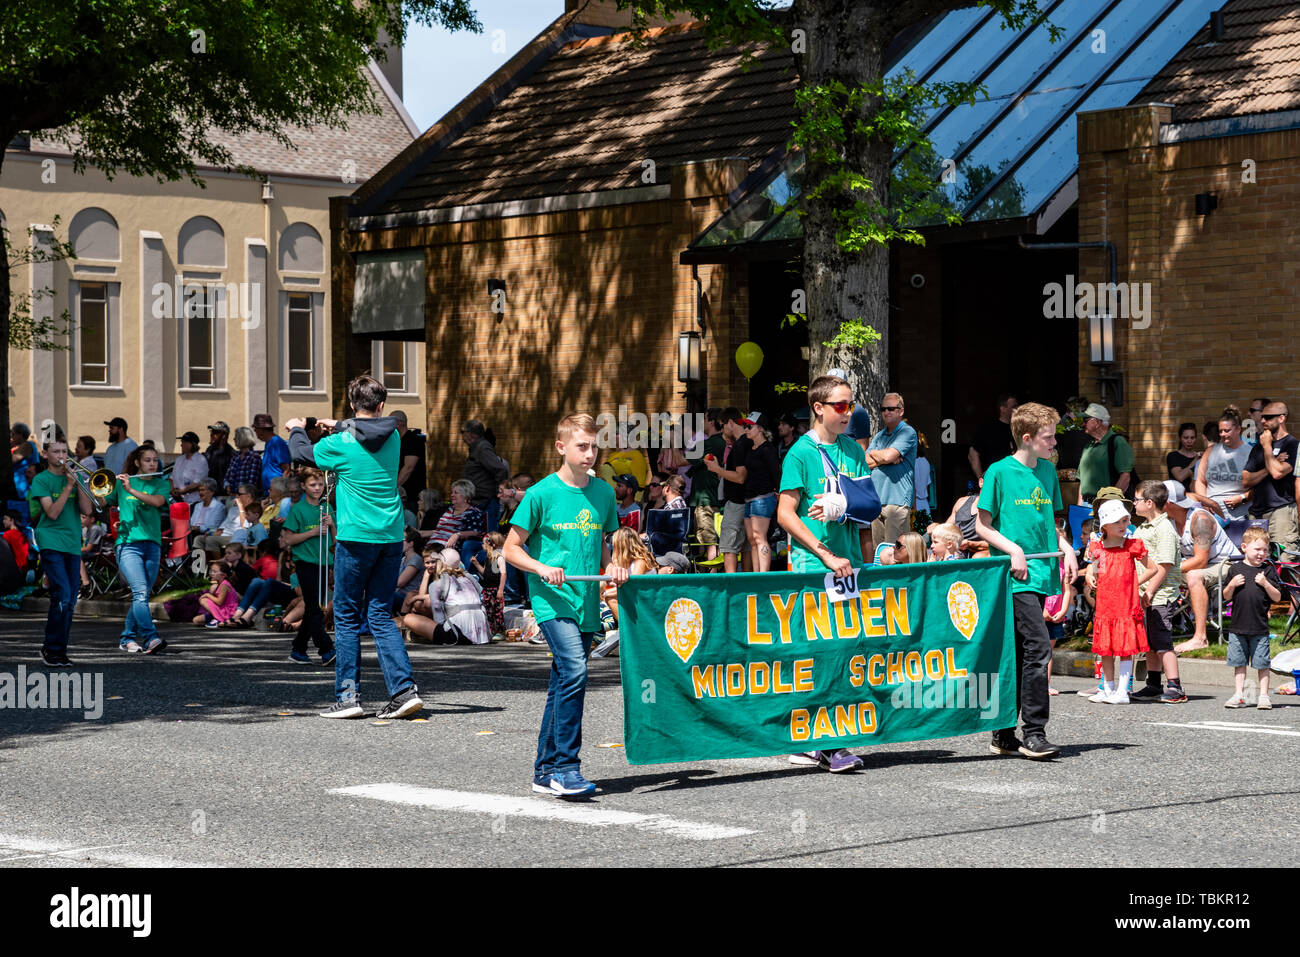 Lynden Middle School Band Märsche im Jahr 2019 Lynden Landwirte Day Parade. Lynden, Washington Stockfoto